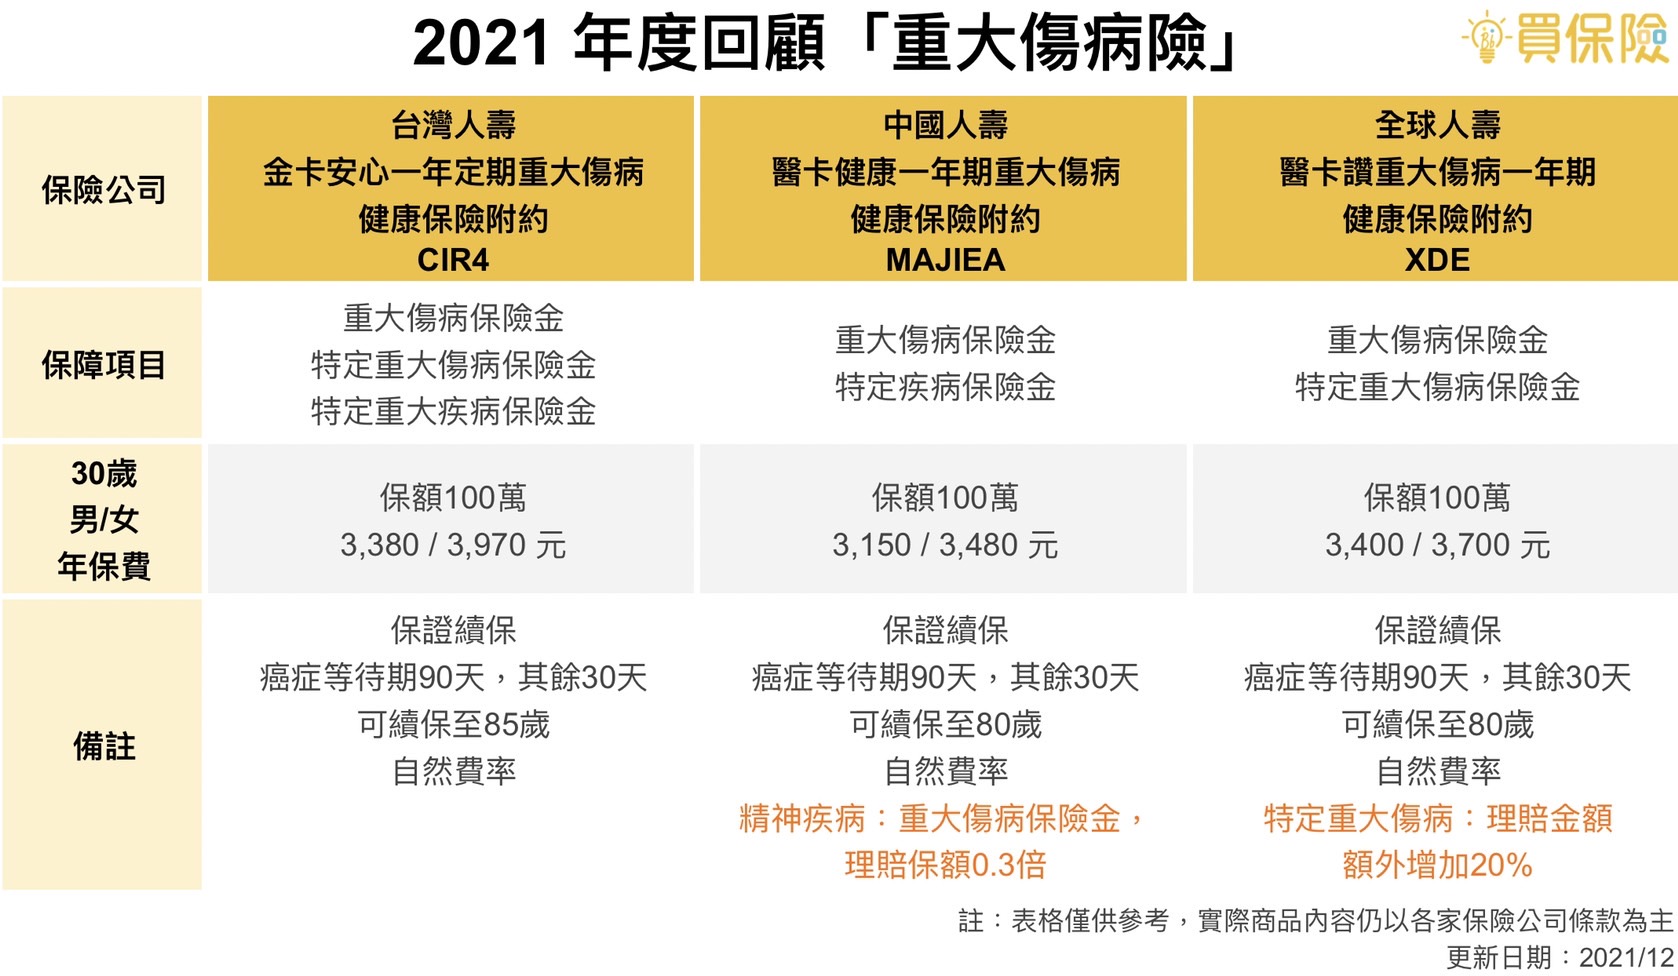 2021年度回顧，網路熱門重大傷病險商品，台灣人壽CIR4、中國人壽MAJIEA、全球人壽XDE